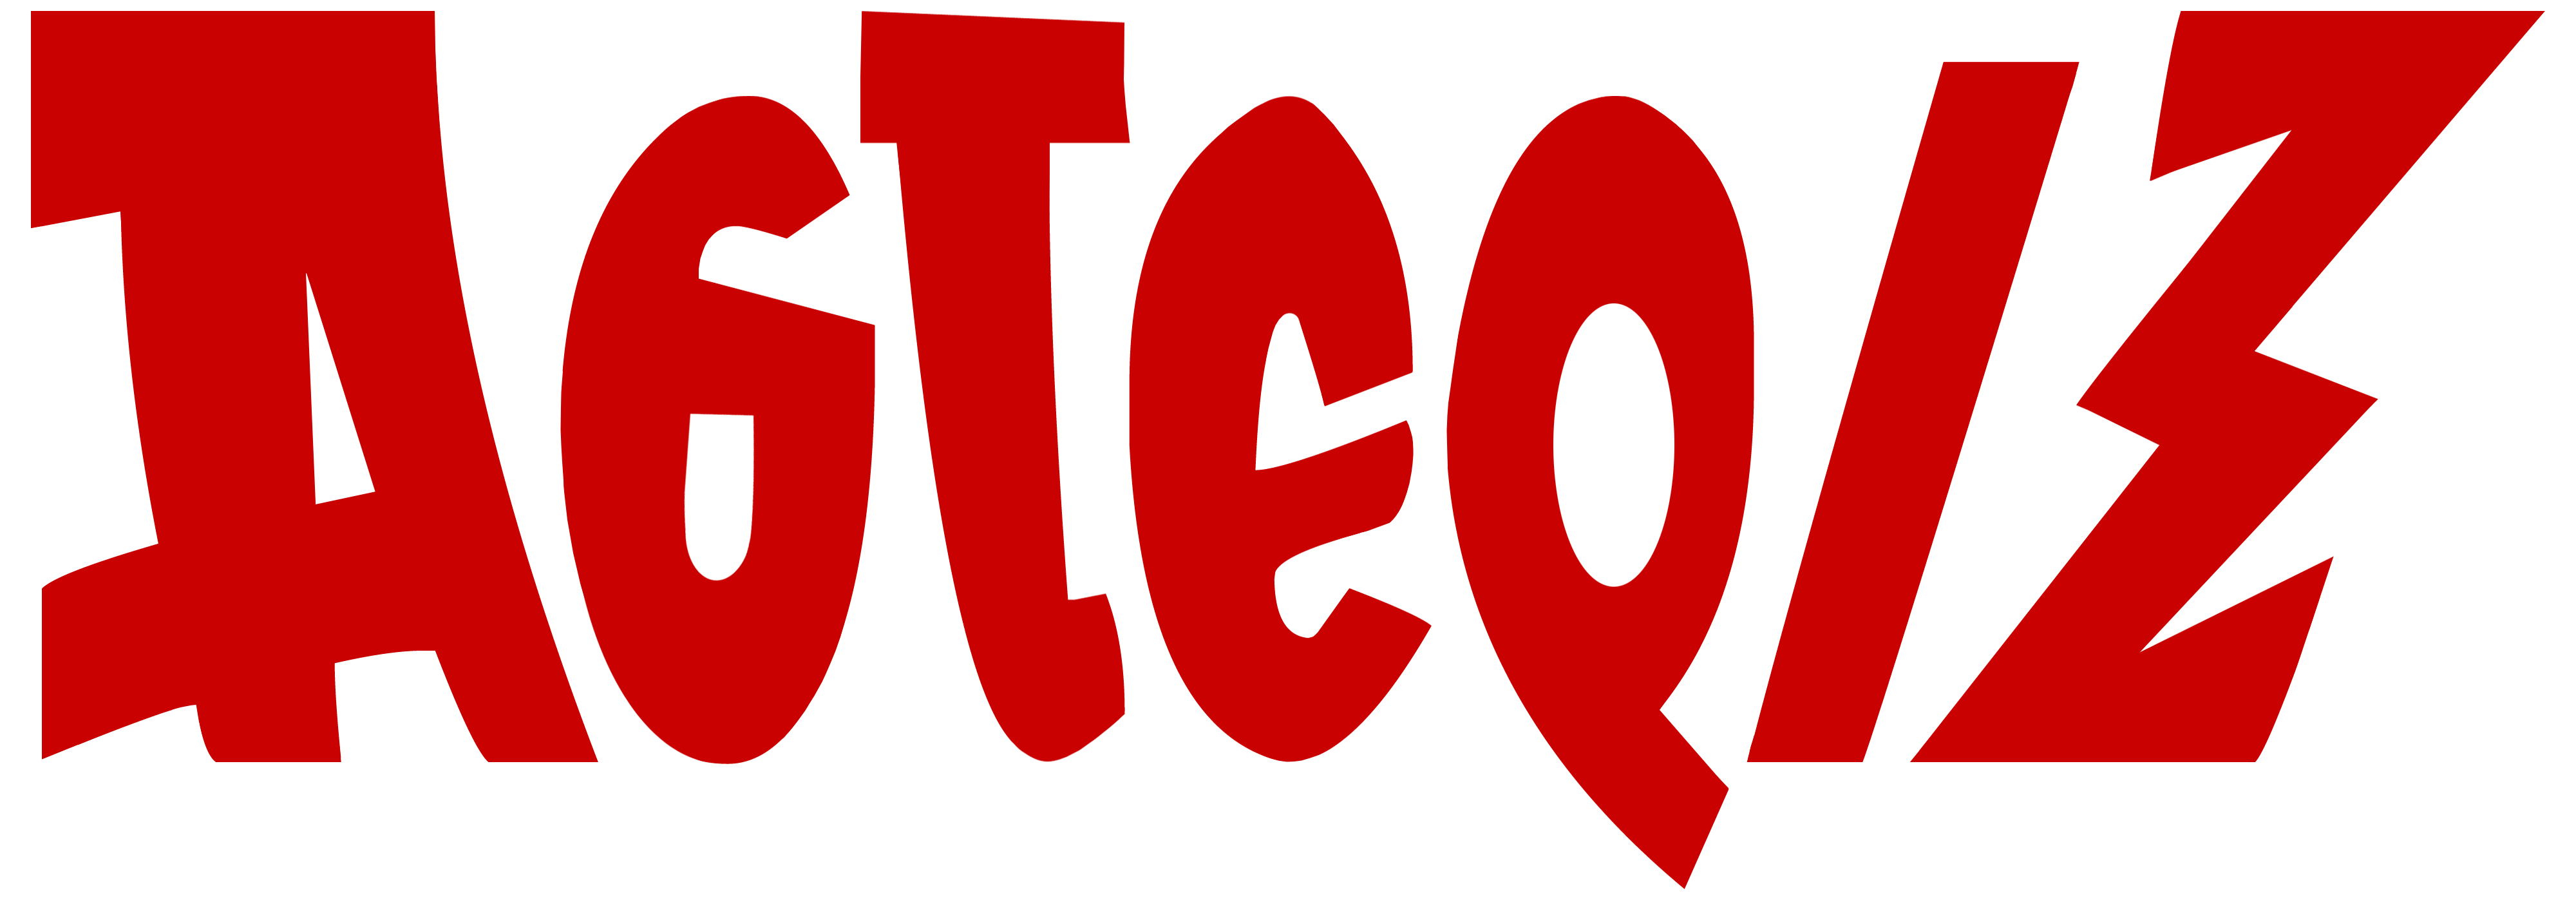 Logo Asterix PNG - 111196